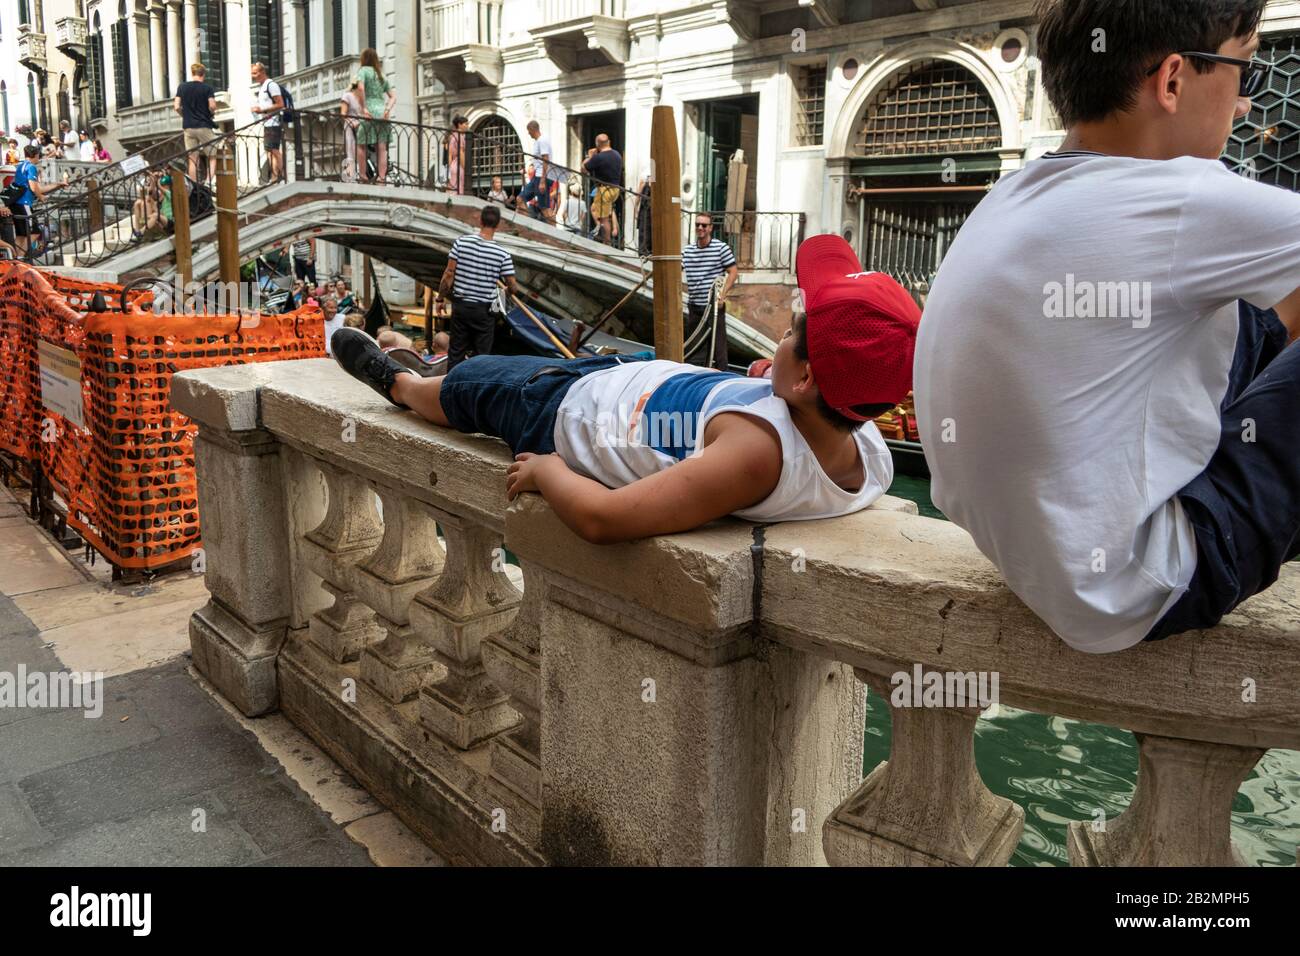 Ragazzo che si posa sul muro del canale, riposante, Venezia, Italia Foto Stock